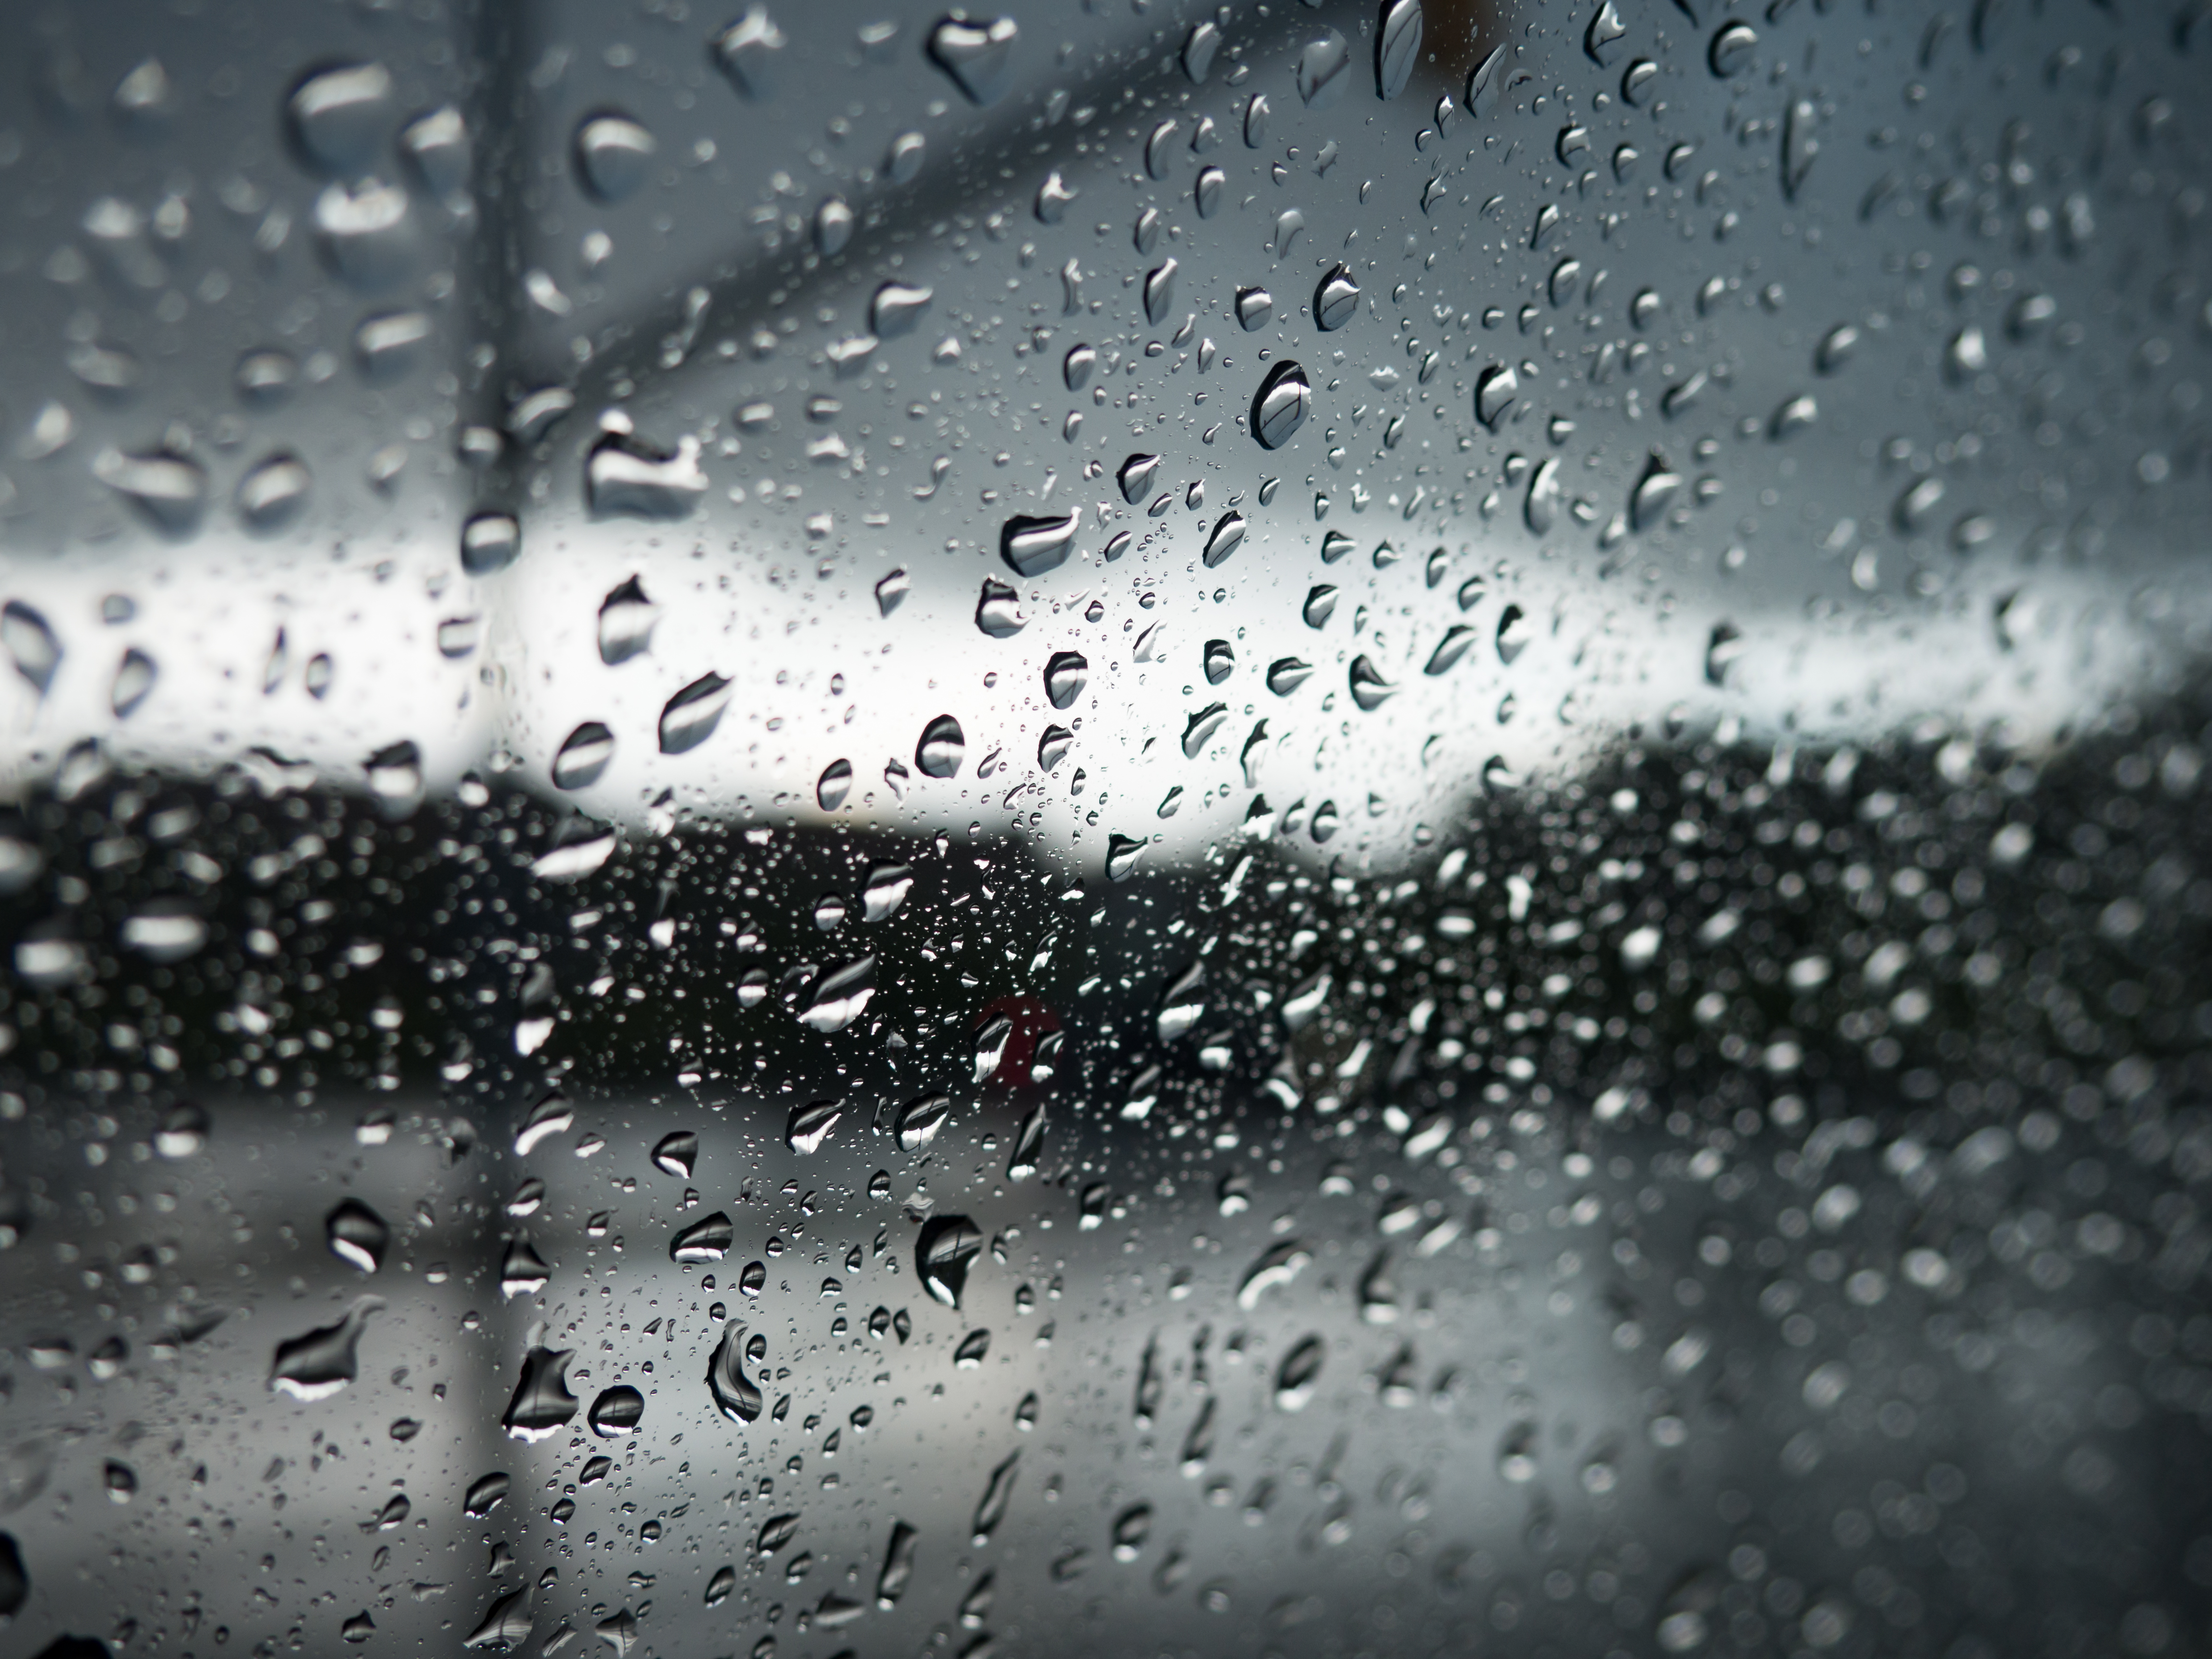 Окно в дождевых каплях. Дождь. Капли на окне. Мокрое окно. Капли дождя.